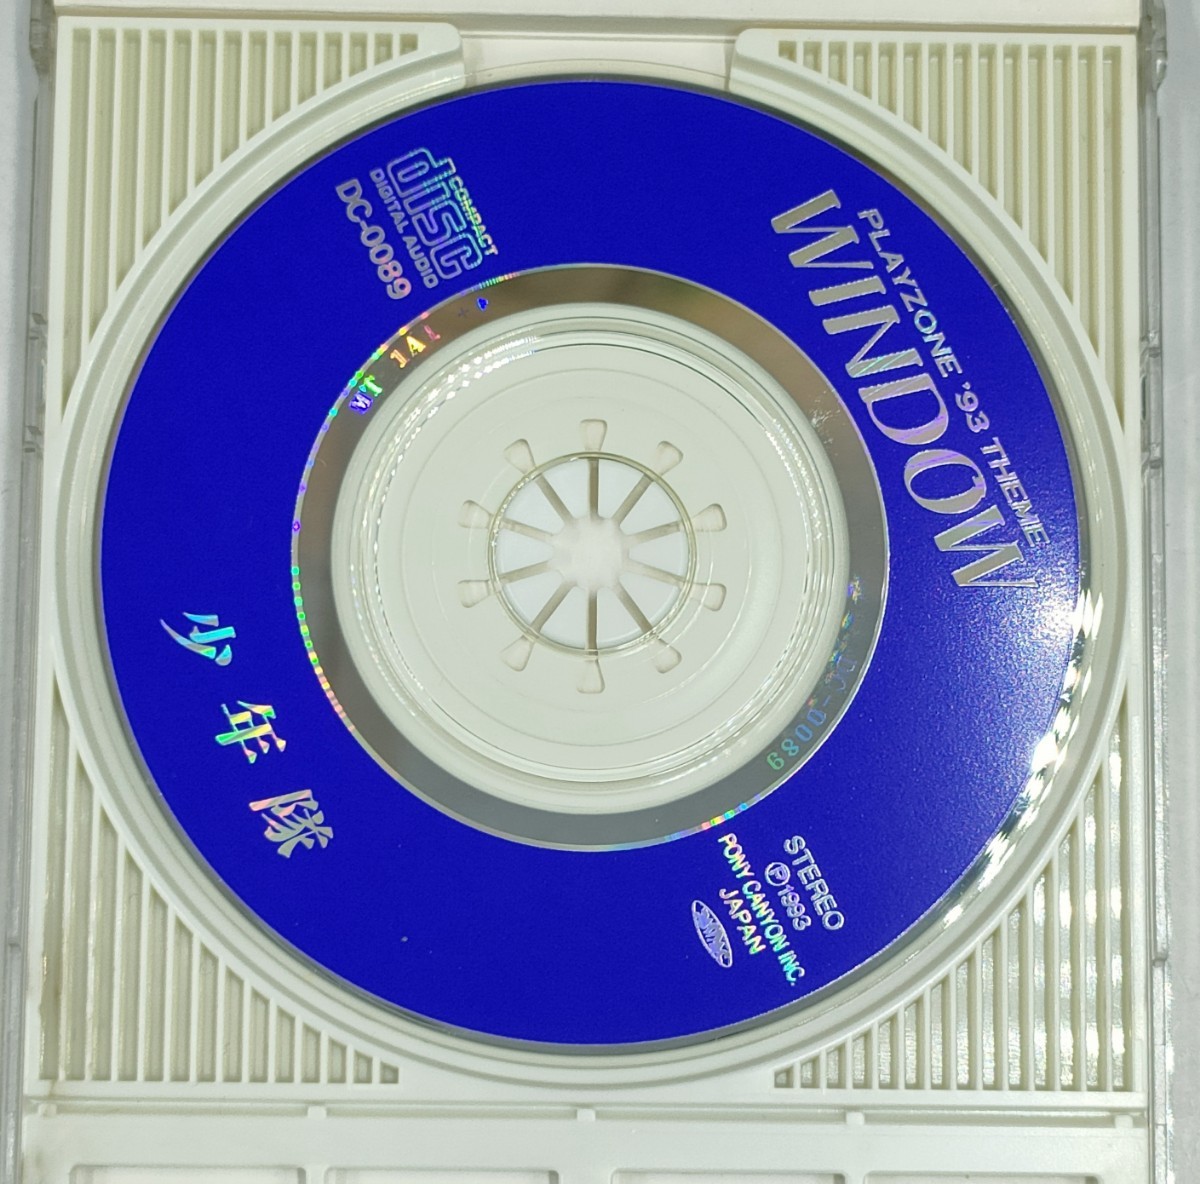 少年隊 8cmシングルCD SHONENTAI MUSICAL PLAYZONE'93 WINDOW ミュージカル プレゾン ウィンドウ_画像3